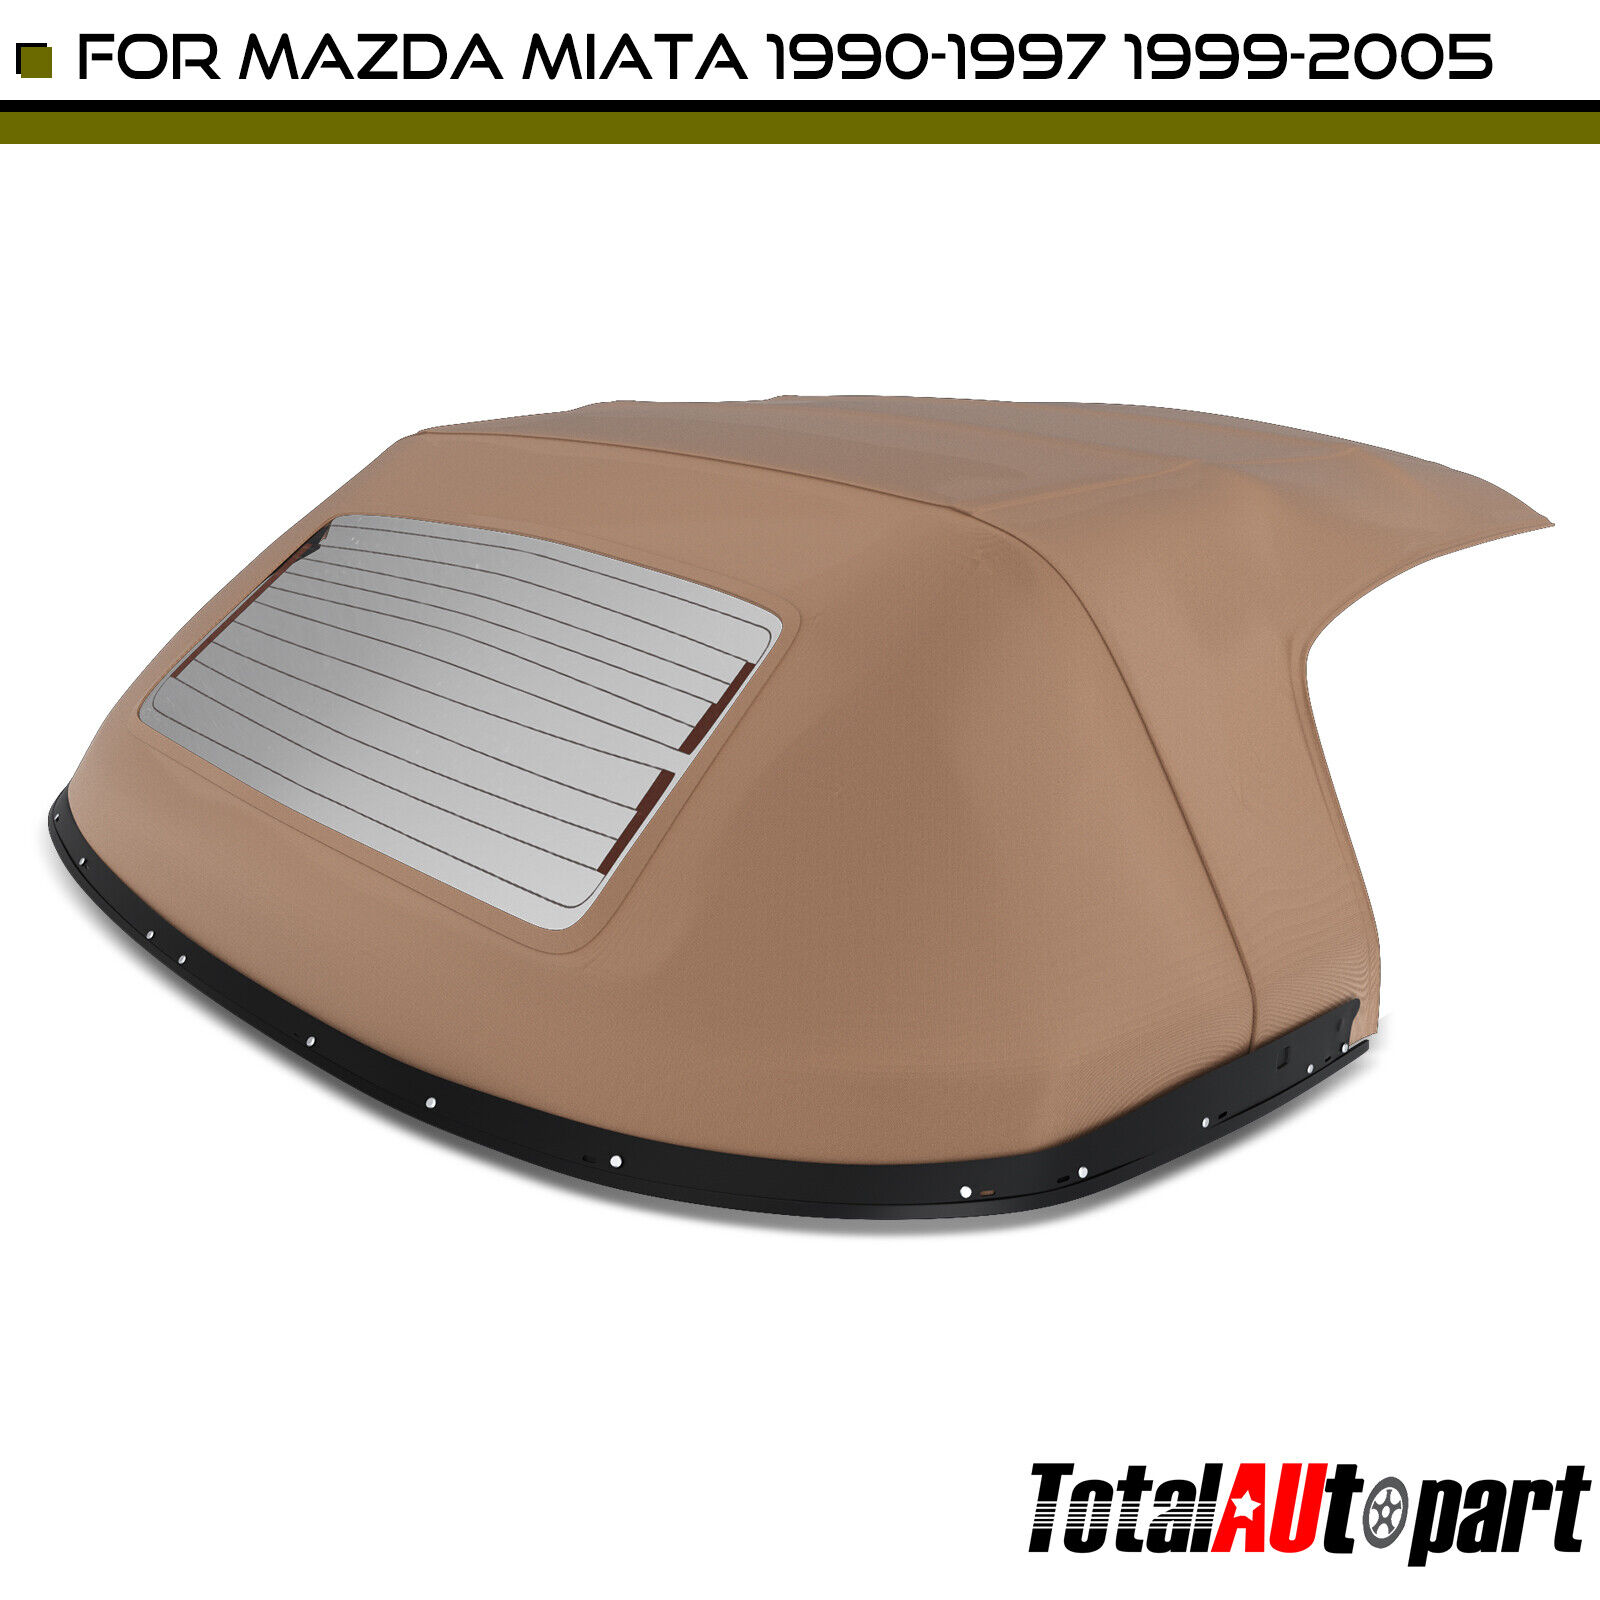 New Tan Convertible Soft Top for Mazda Miata 1990-1997 1999-2005 w/ Rain Rail